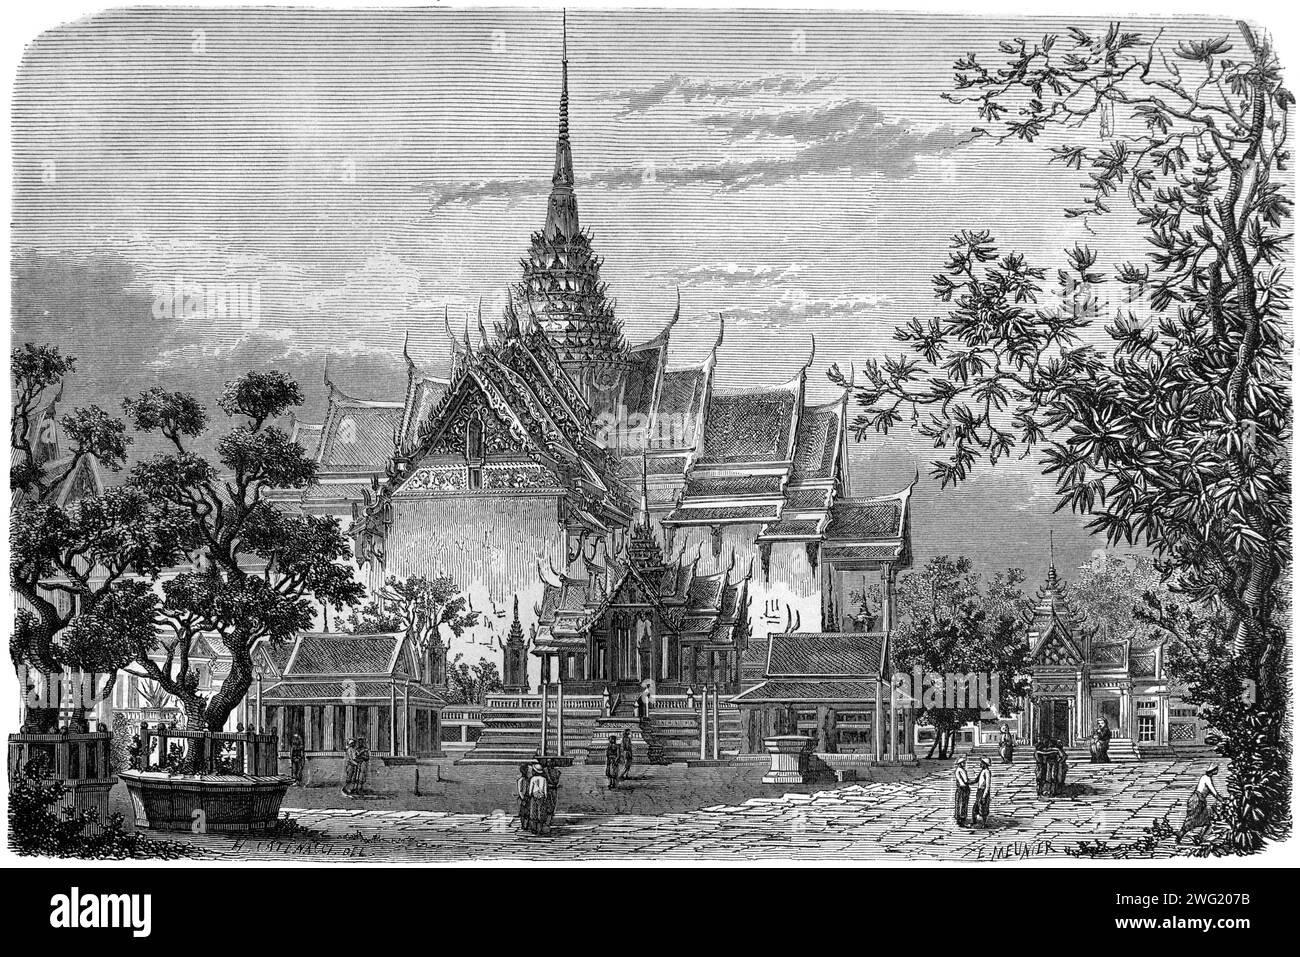 Phra Maha Prasat Gruppe von königlichen Gebäuden auf dem Gelände des Großen Palastes oder Königspalast und Gärten Bangkok Thailand. Vintage oder historische Gravur oder Illustration 1863 Stockfoto